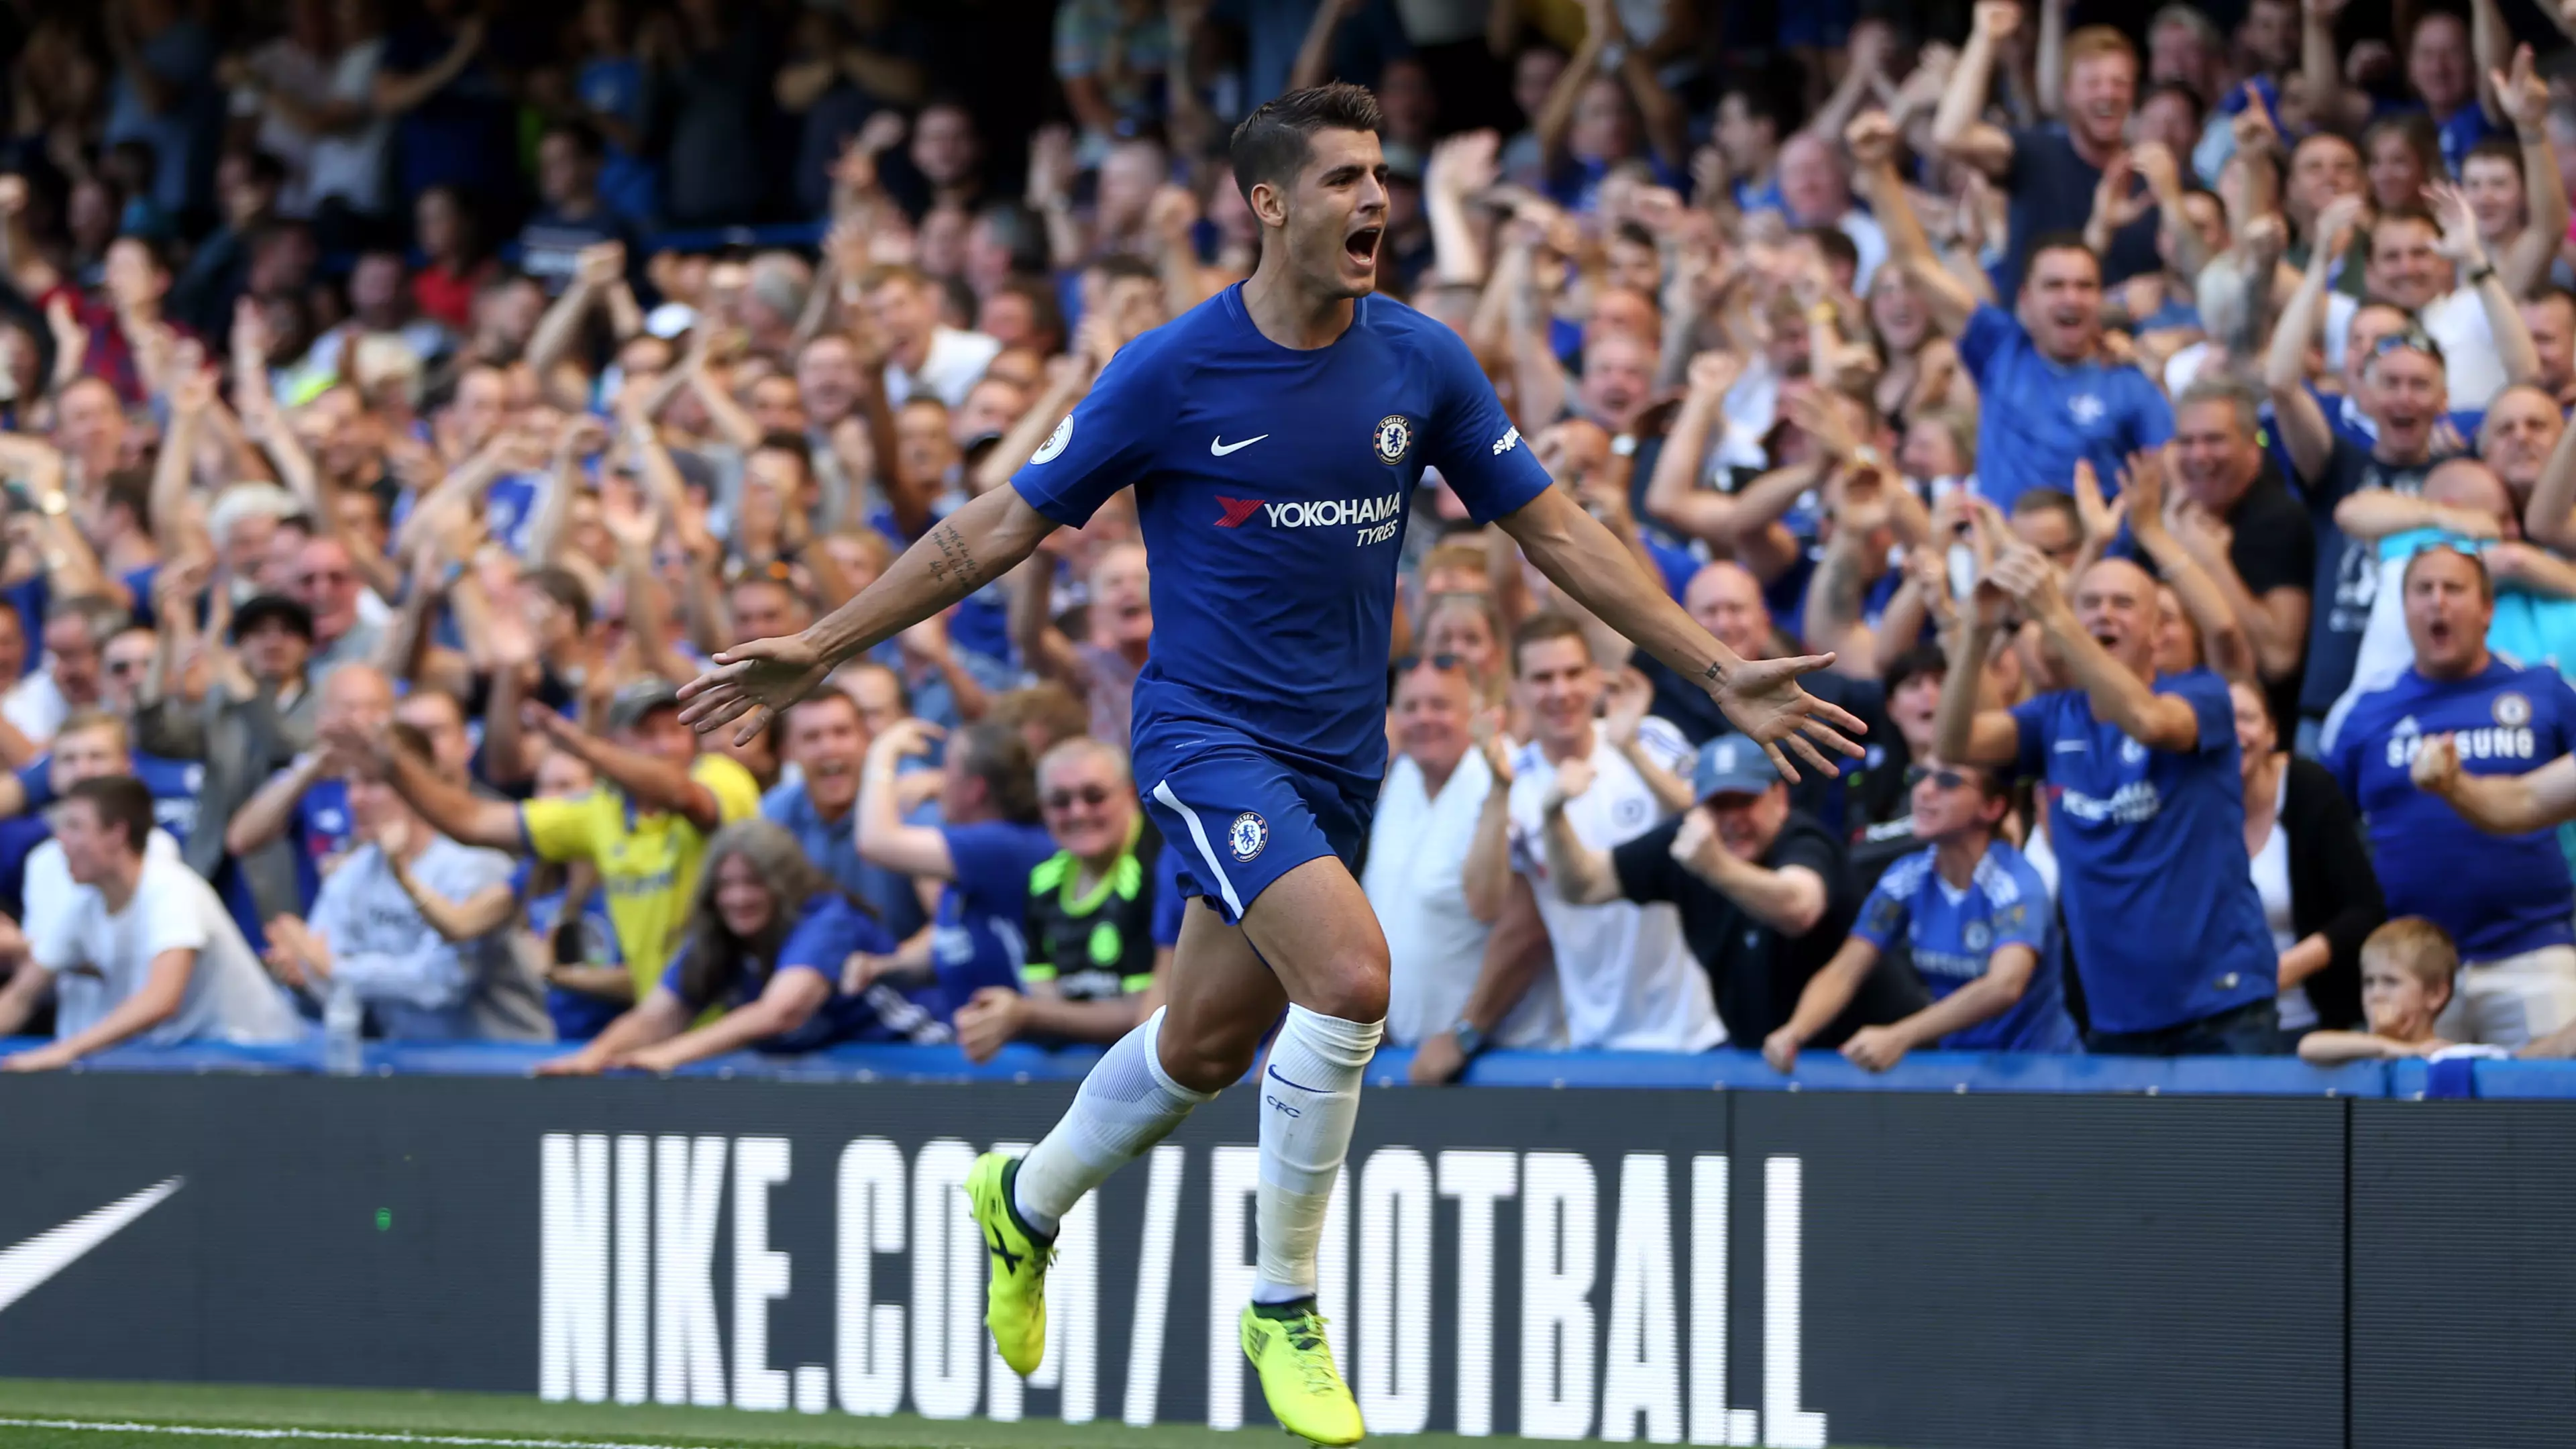 Alvaro Morata Made History During Chelsea's Win Over Everton